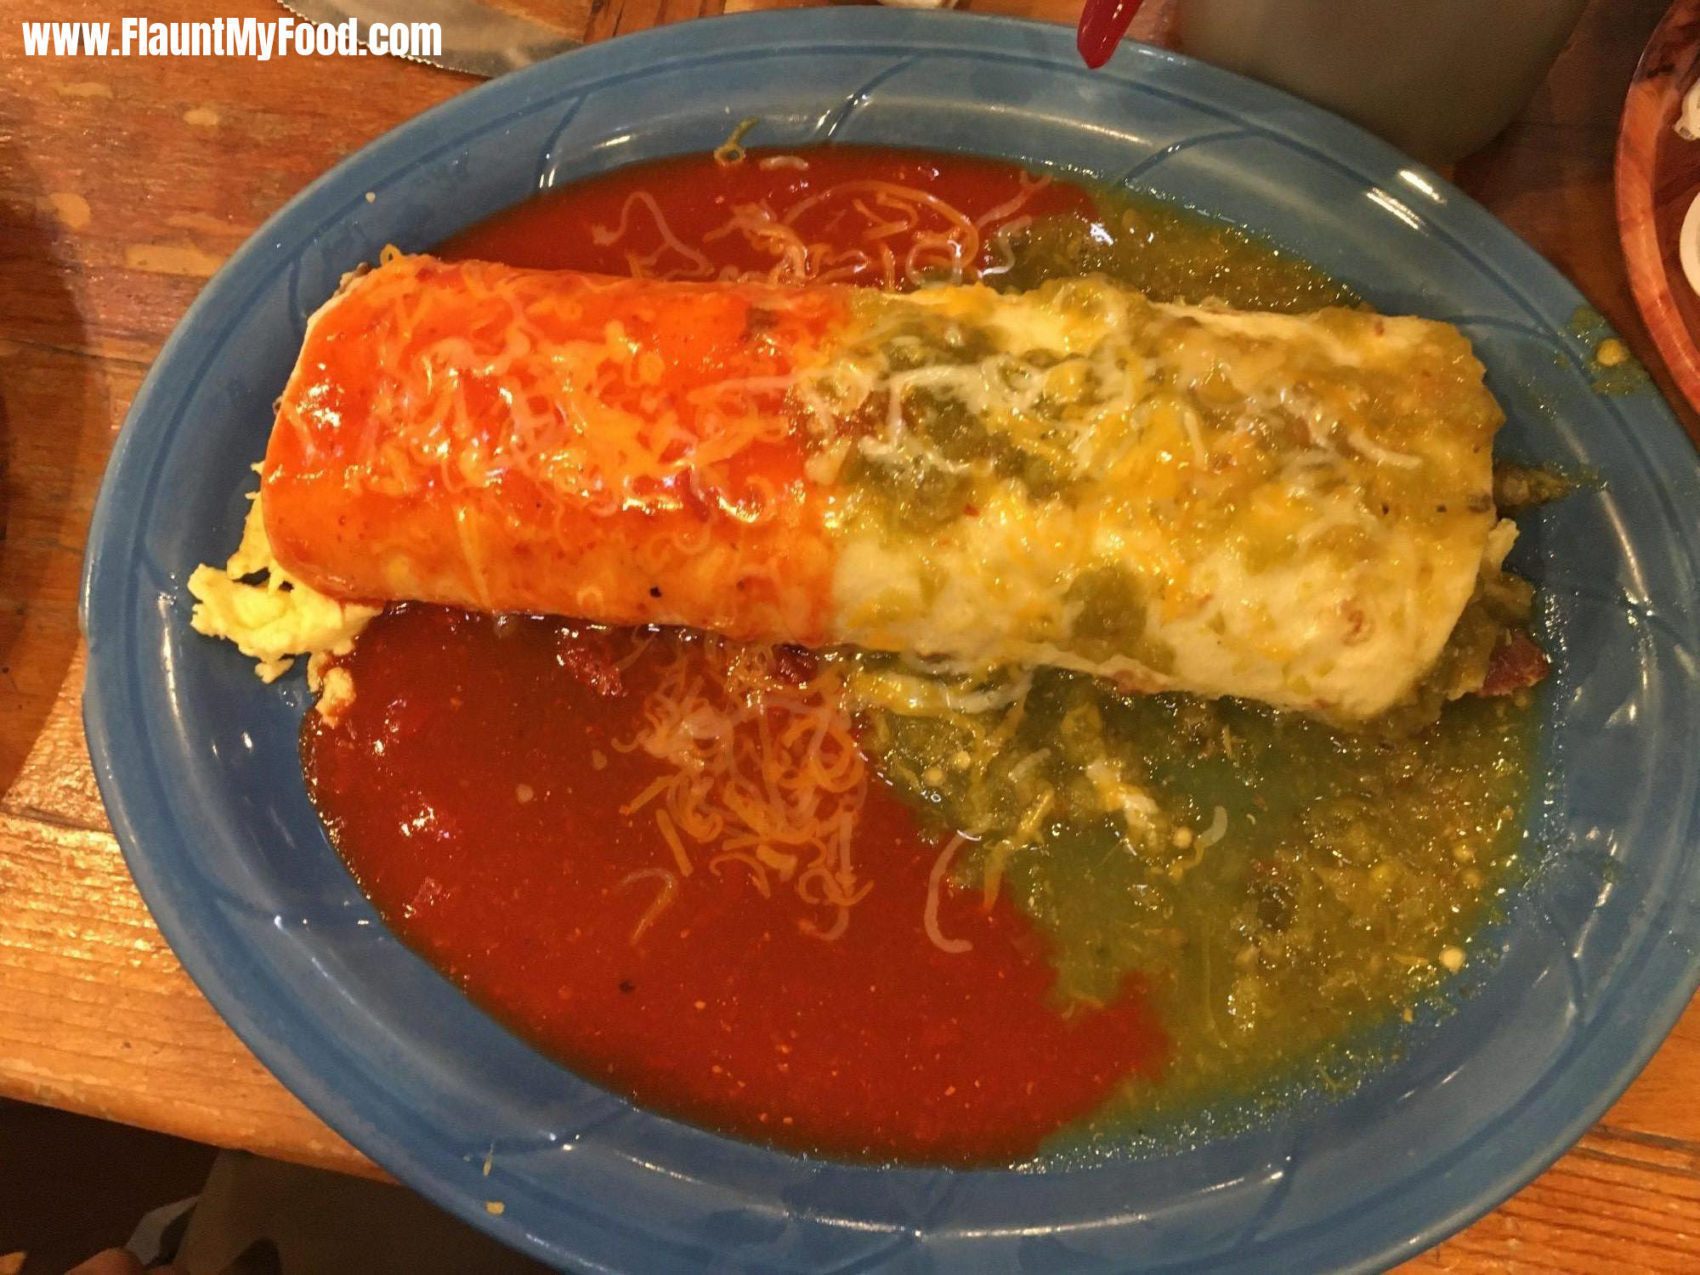 Delicious Green and Red Chile Burrito!Delicious Green and Red Chile Burrito!